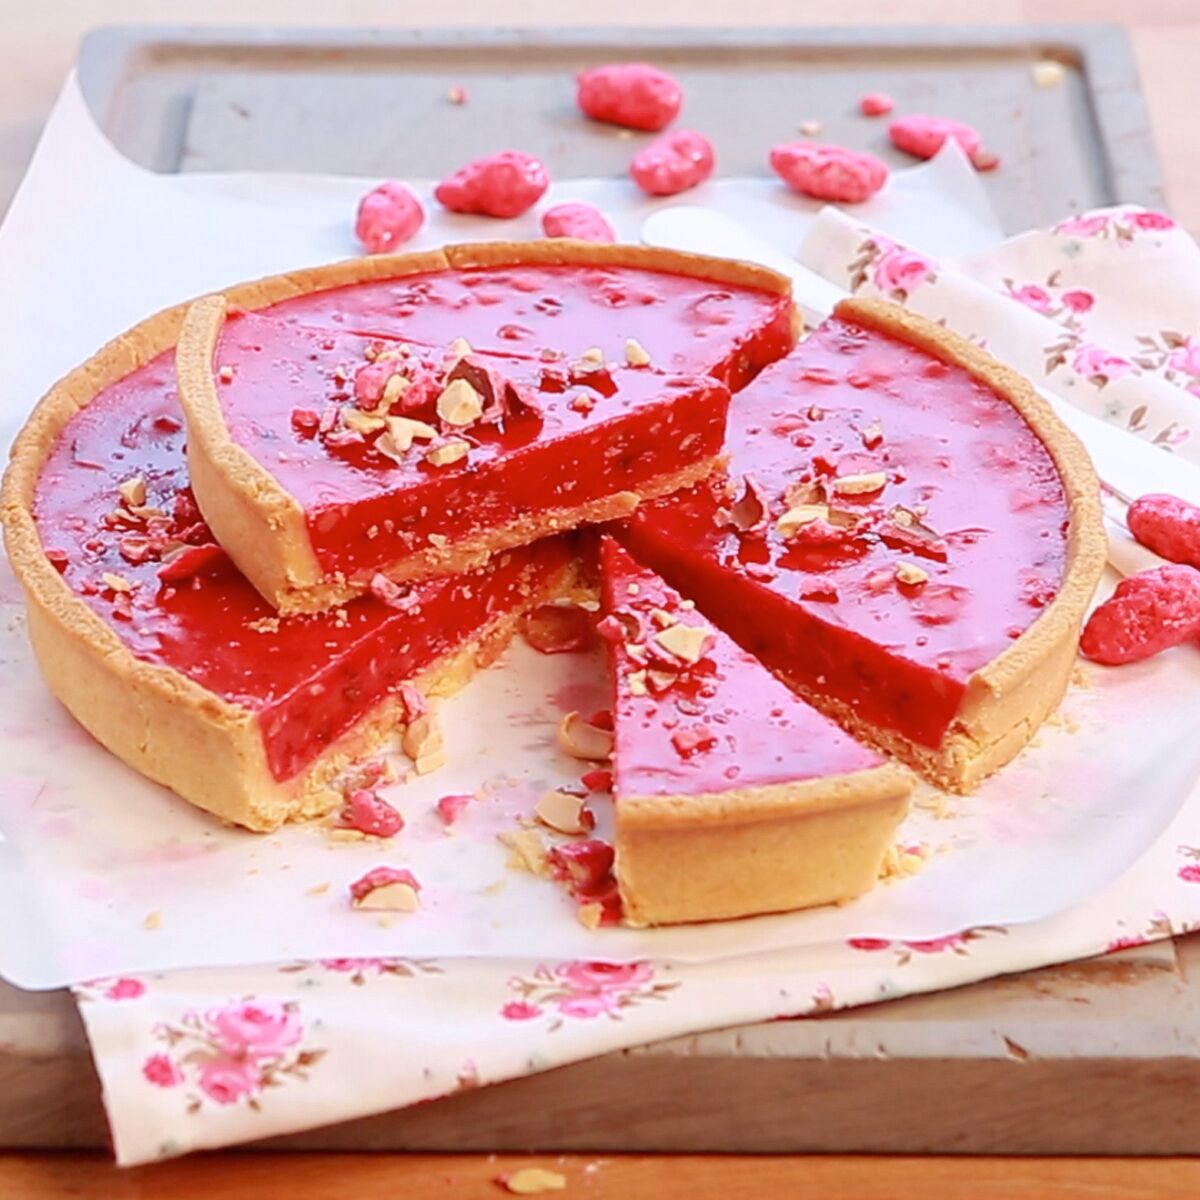 La recette de la tarte aux pralines roses en vidéo - Cuisine Actuelle